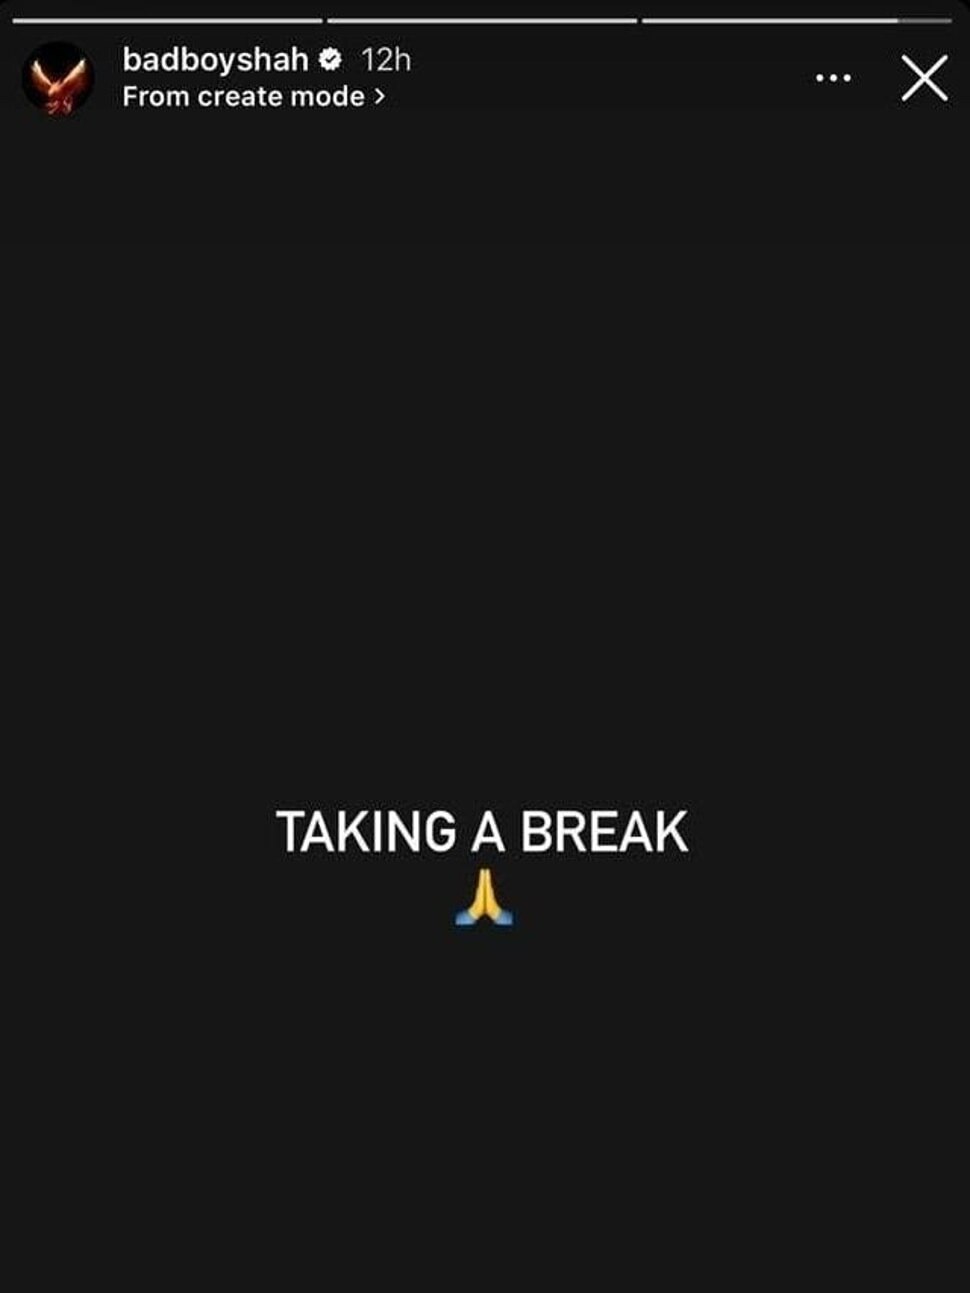 rapper badshah shared a post on taking a break on social media fans got worried 